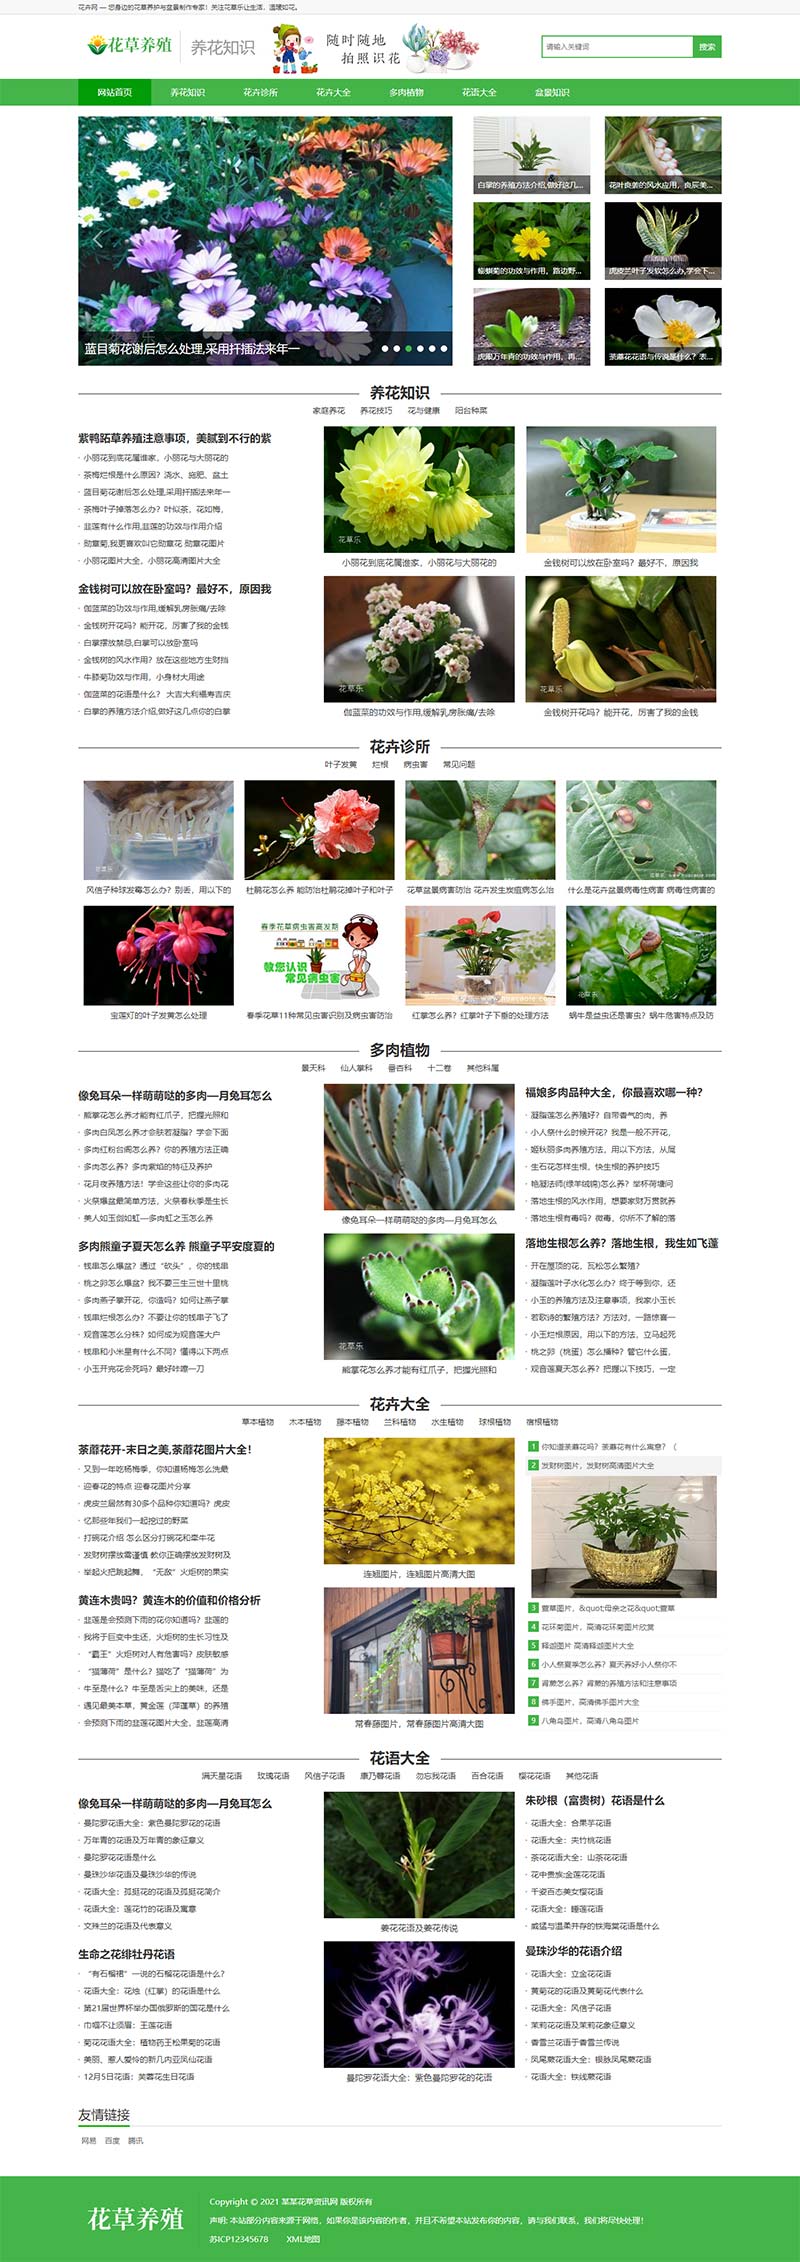 花草植物花卉养殖新闻资讯类WordPress模板演示图